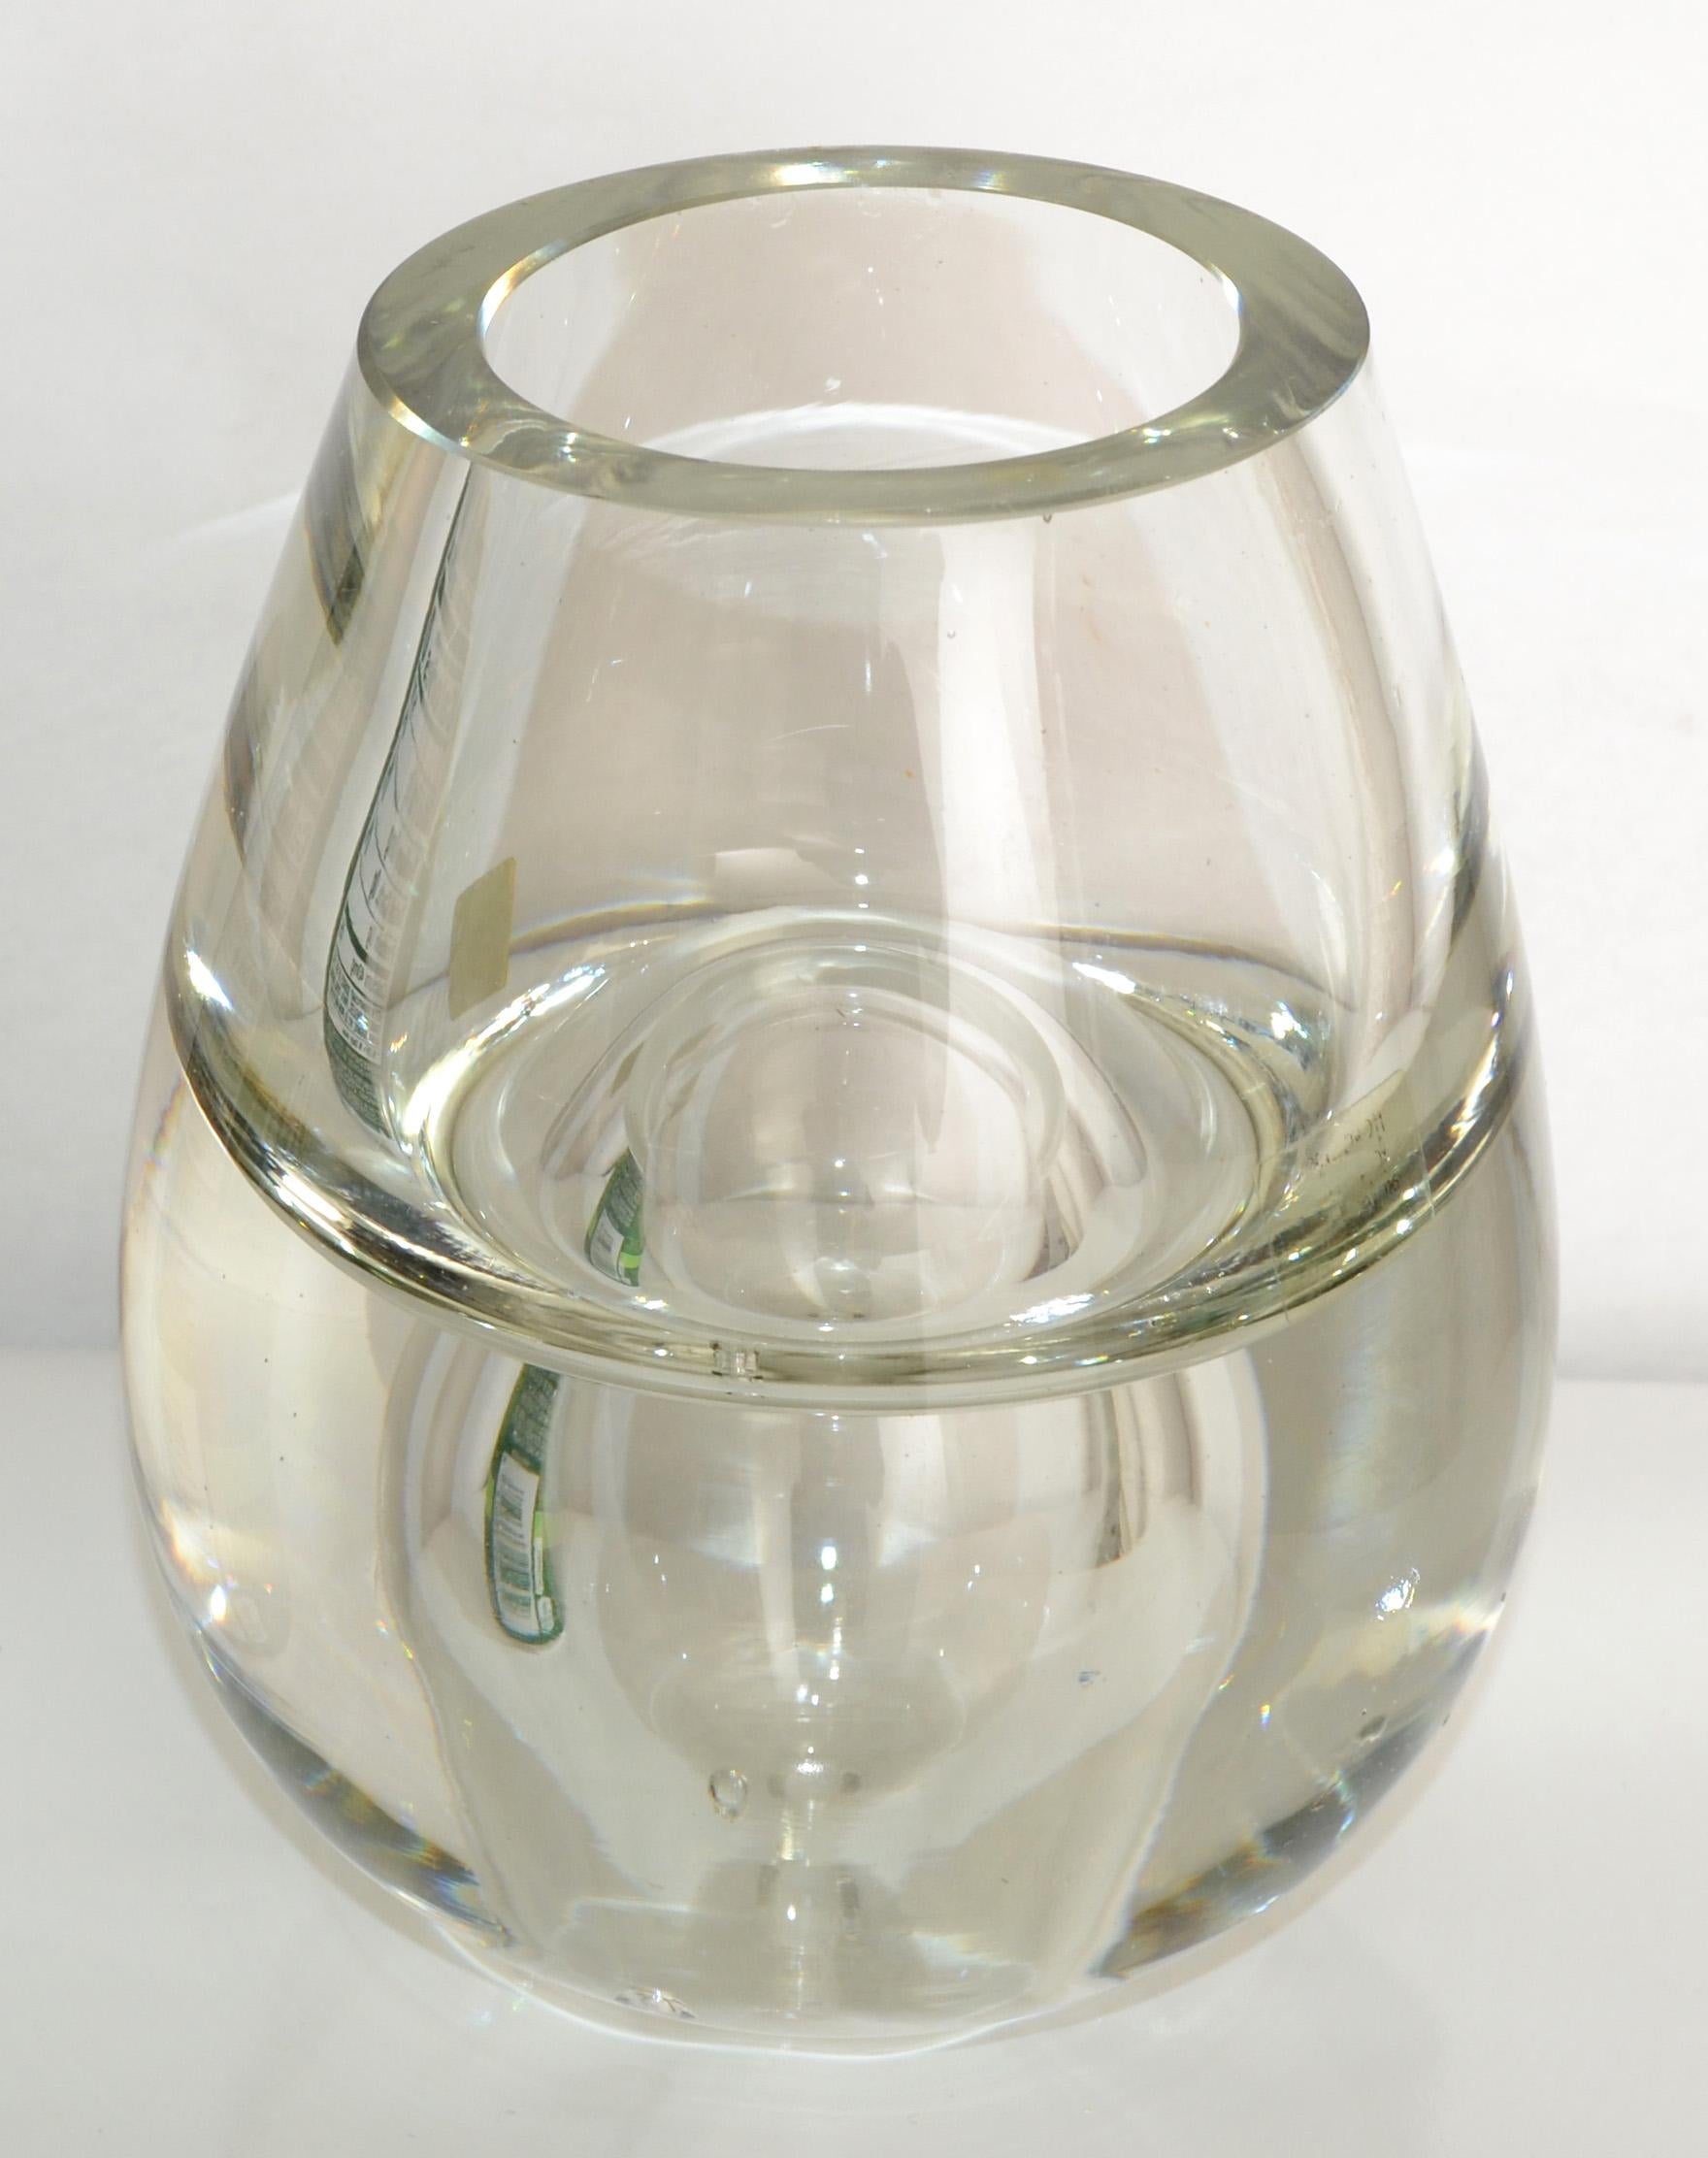 La Vida Crystal transparentes mundgeblasenes Kunstglas aus Polen, reversibel.
Die große Öffnung mit 2,25 Zoll Breite ist für einen kleinen Strauß und die kleine Öffnung, 0,25 Zoll für eine einzelne Blume.
Mid-Century Modern einzigartige Glaskunst